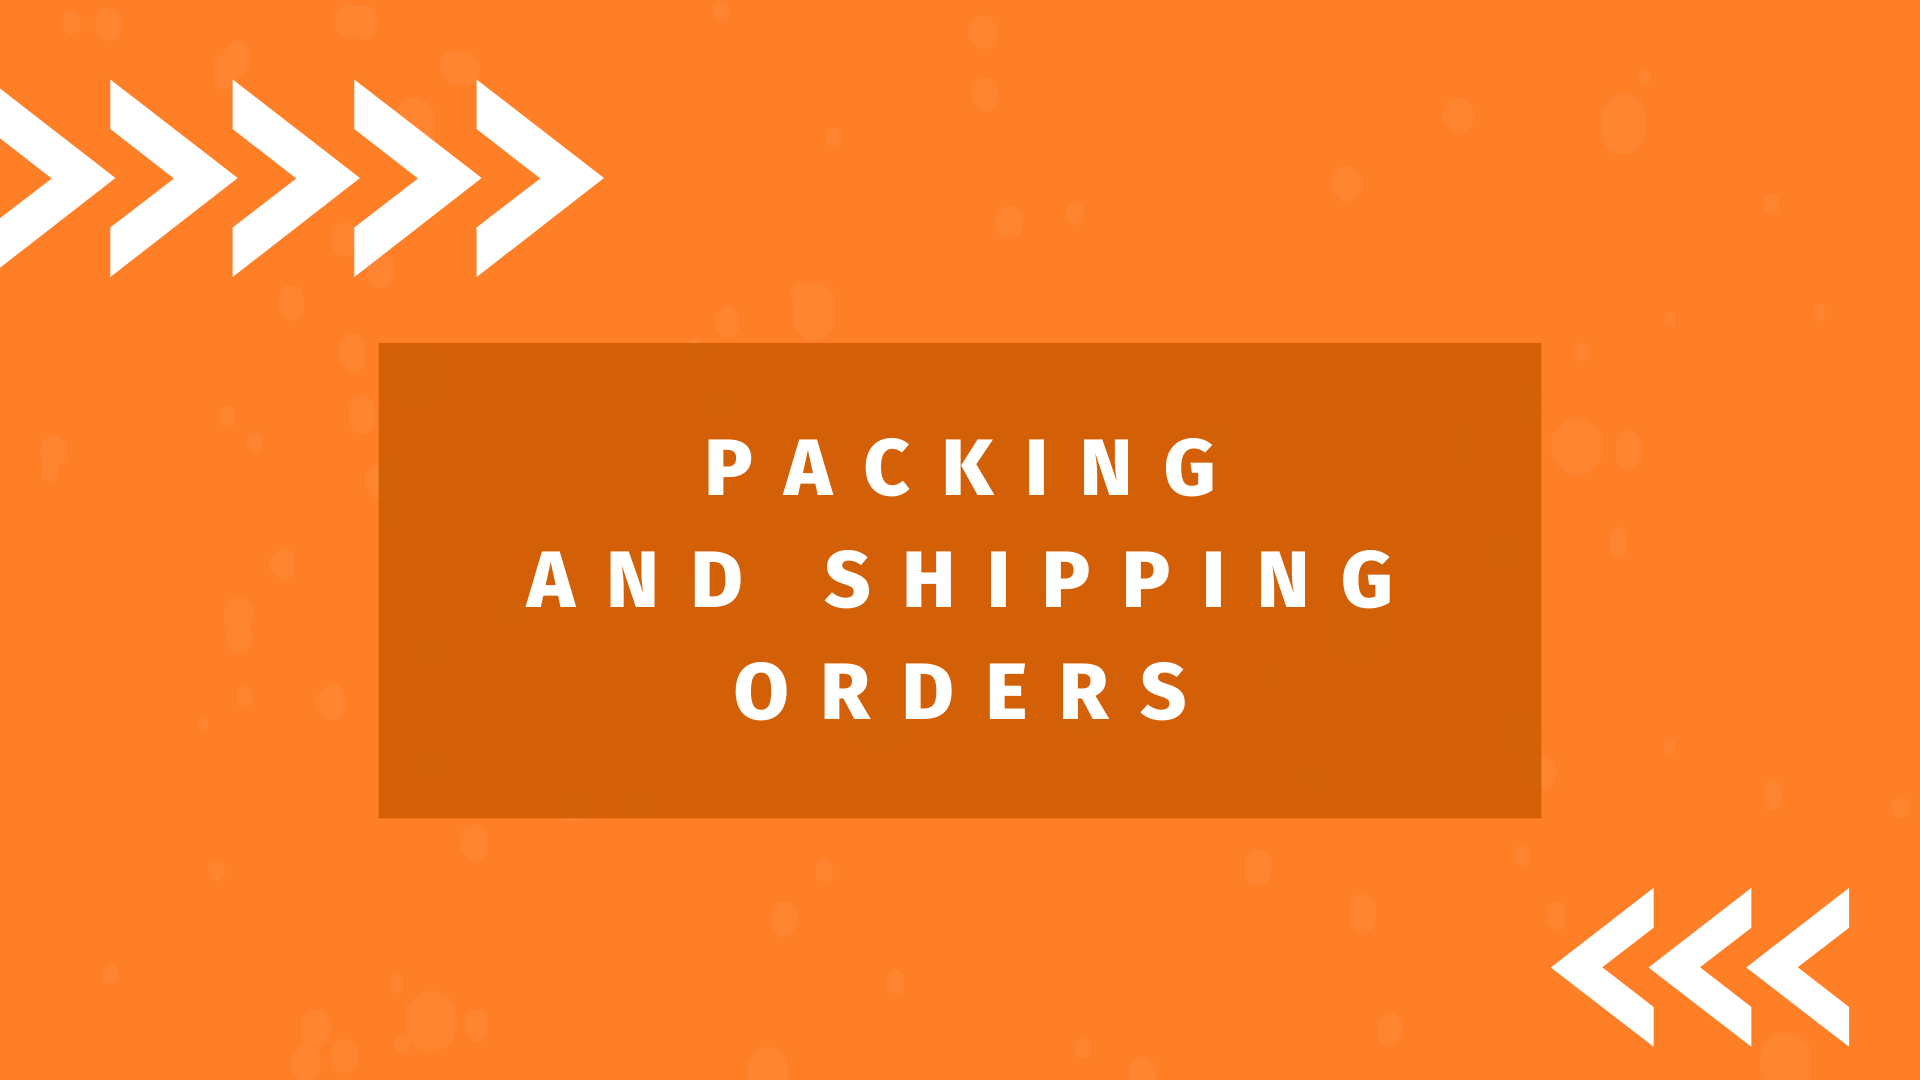 Packing and shipping orders at Amdoko wholesaler